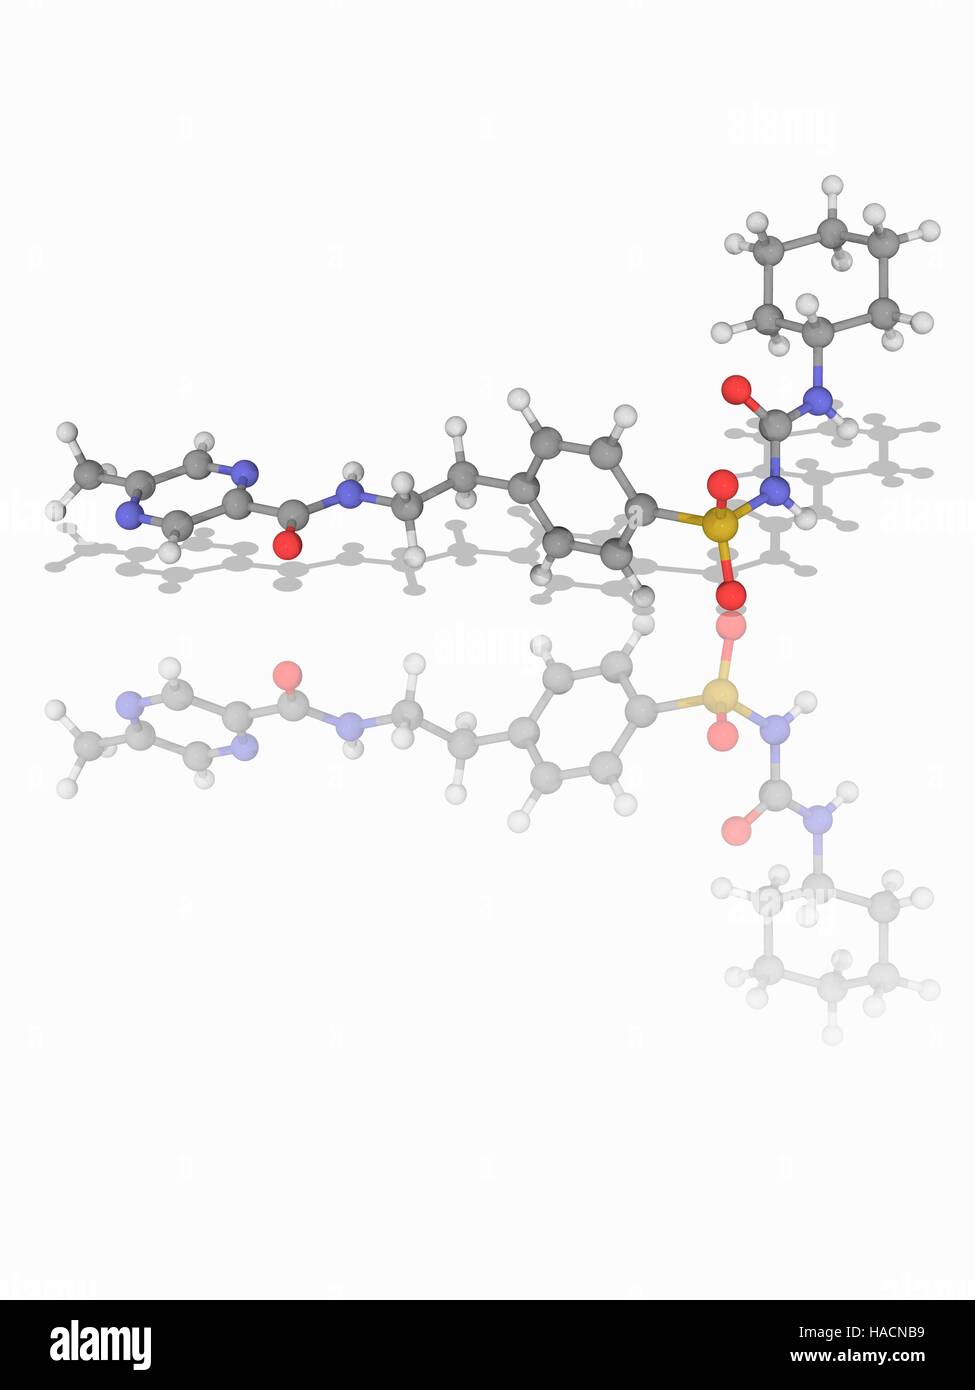 Glucotrol. Molekulares Modell des Anti-Diabetes-Medikament Glipizide (C21. H27. N5. O4. (S). Dies ist ein Sulfonylharnstoffpräparat Medikament, das wirkt durch die Erhöhung der Insulinfreisetzung aus den Betazellen in der Bauchspeicheldrüse. Atome als Kugeln dargestellt werden und sind farblich gekennzeichnet: Kohlenstoff (grau), Wasserstoff (weiß), Stickstoff (blau), Sauerstoff (rot) und Schwefel (gelb). Abbildung. Stockfoto